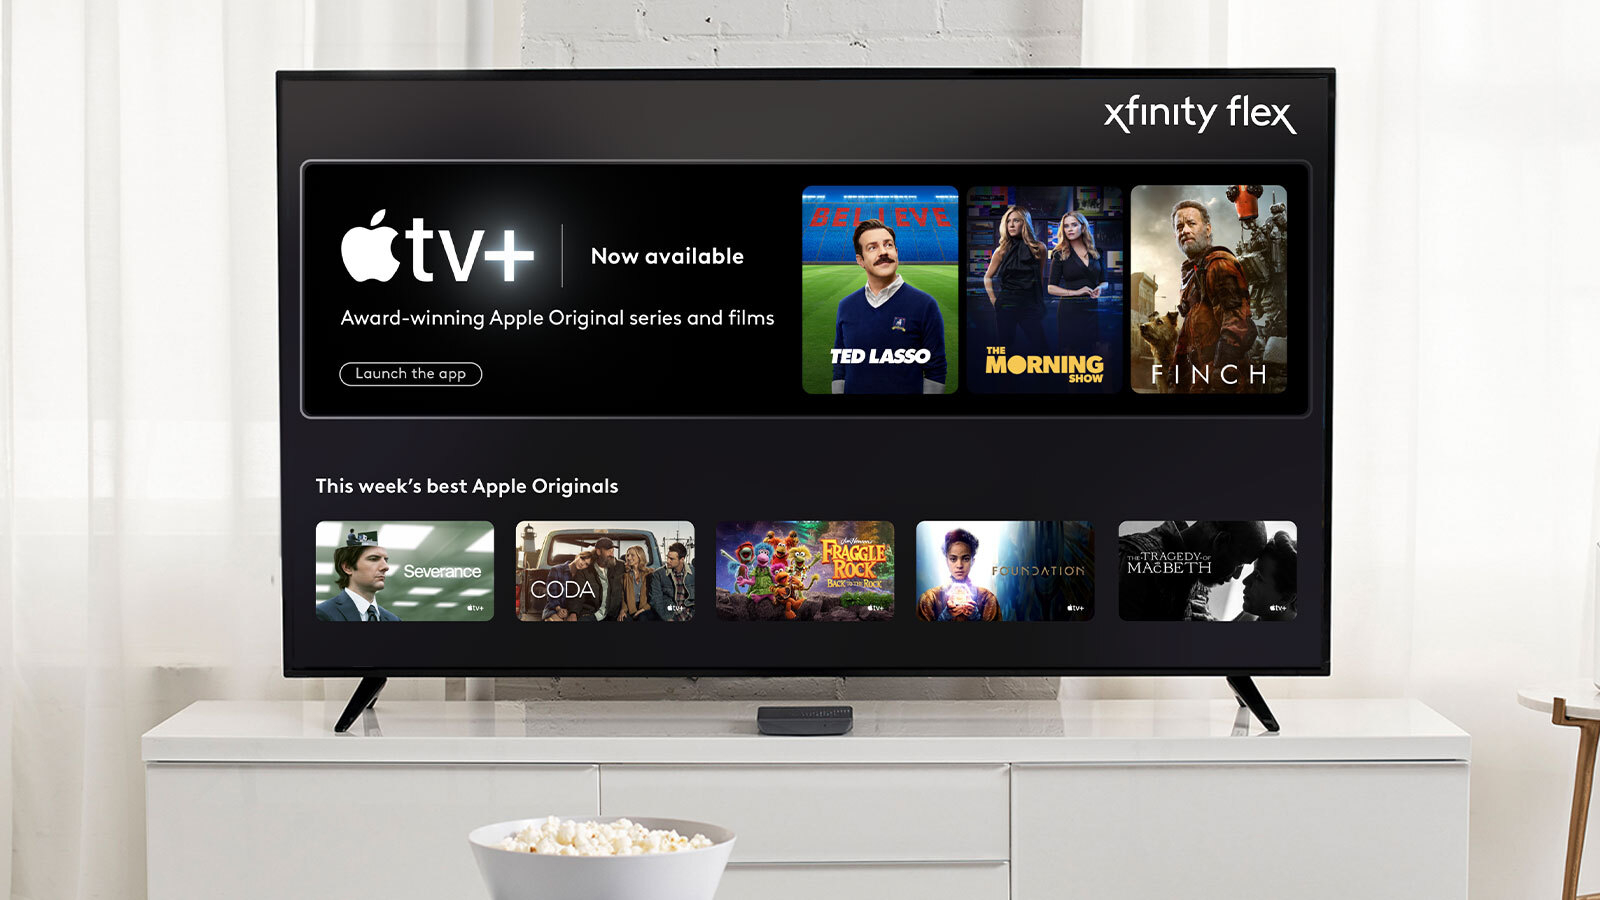 Apple TV Plus on Xfinity Flex